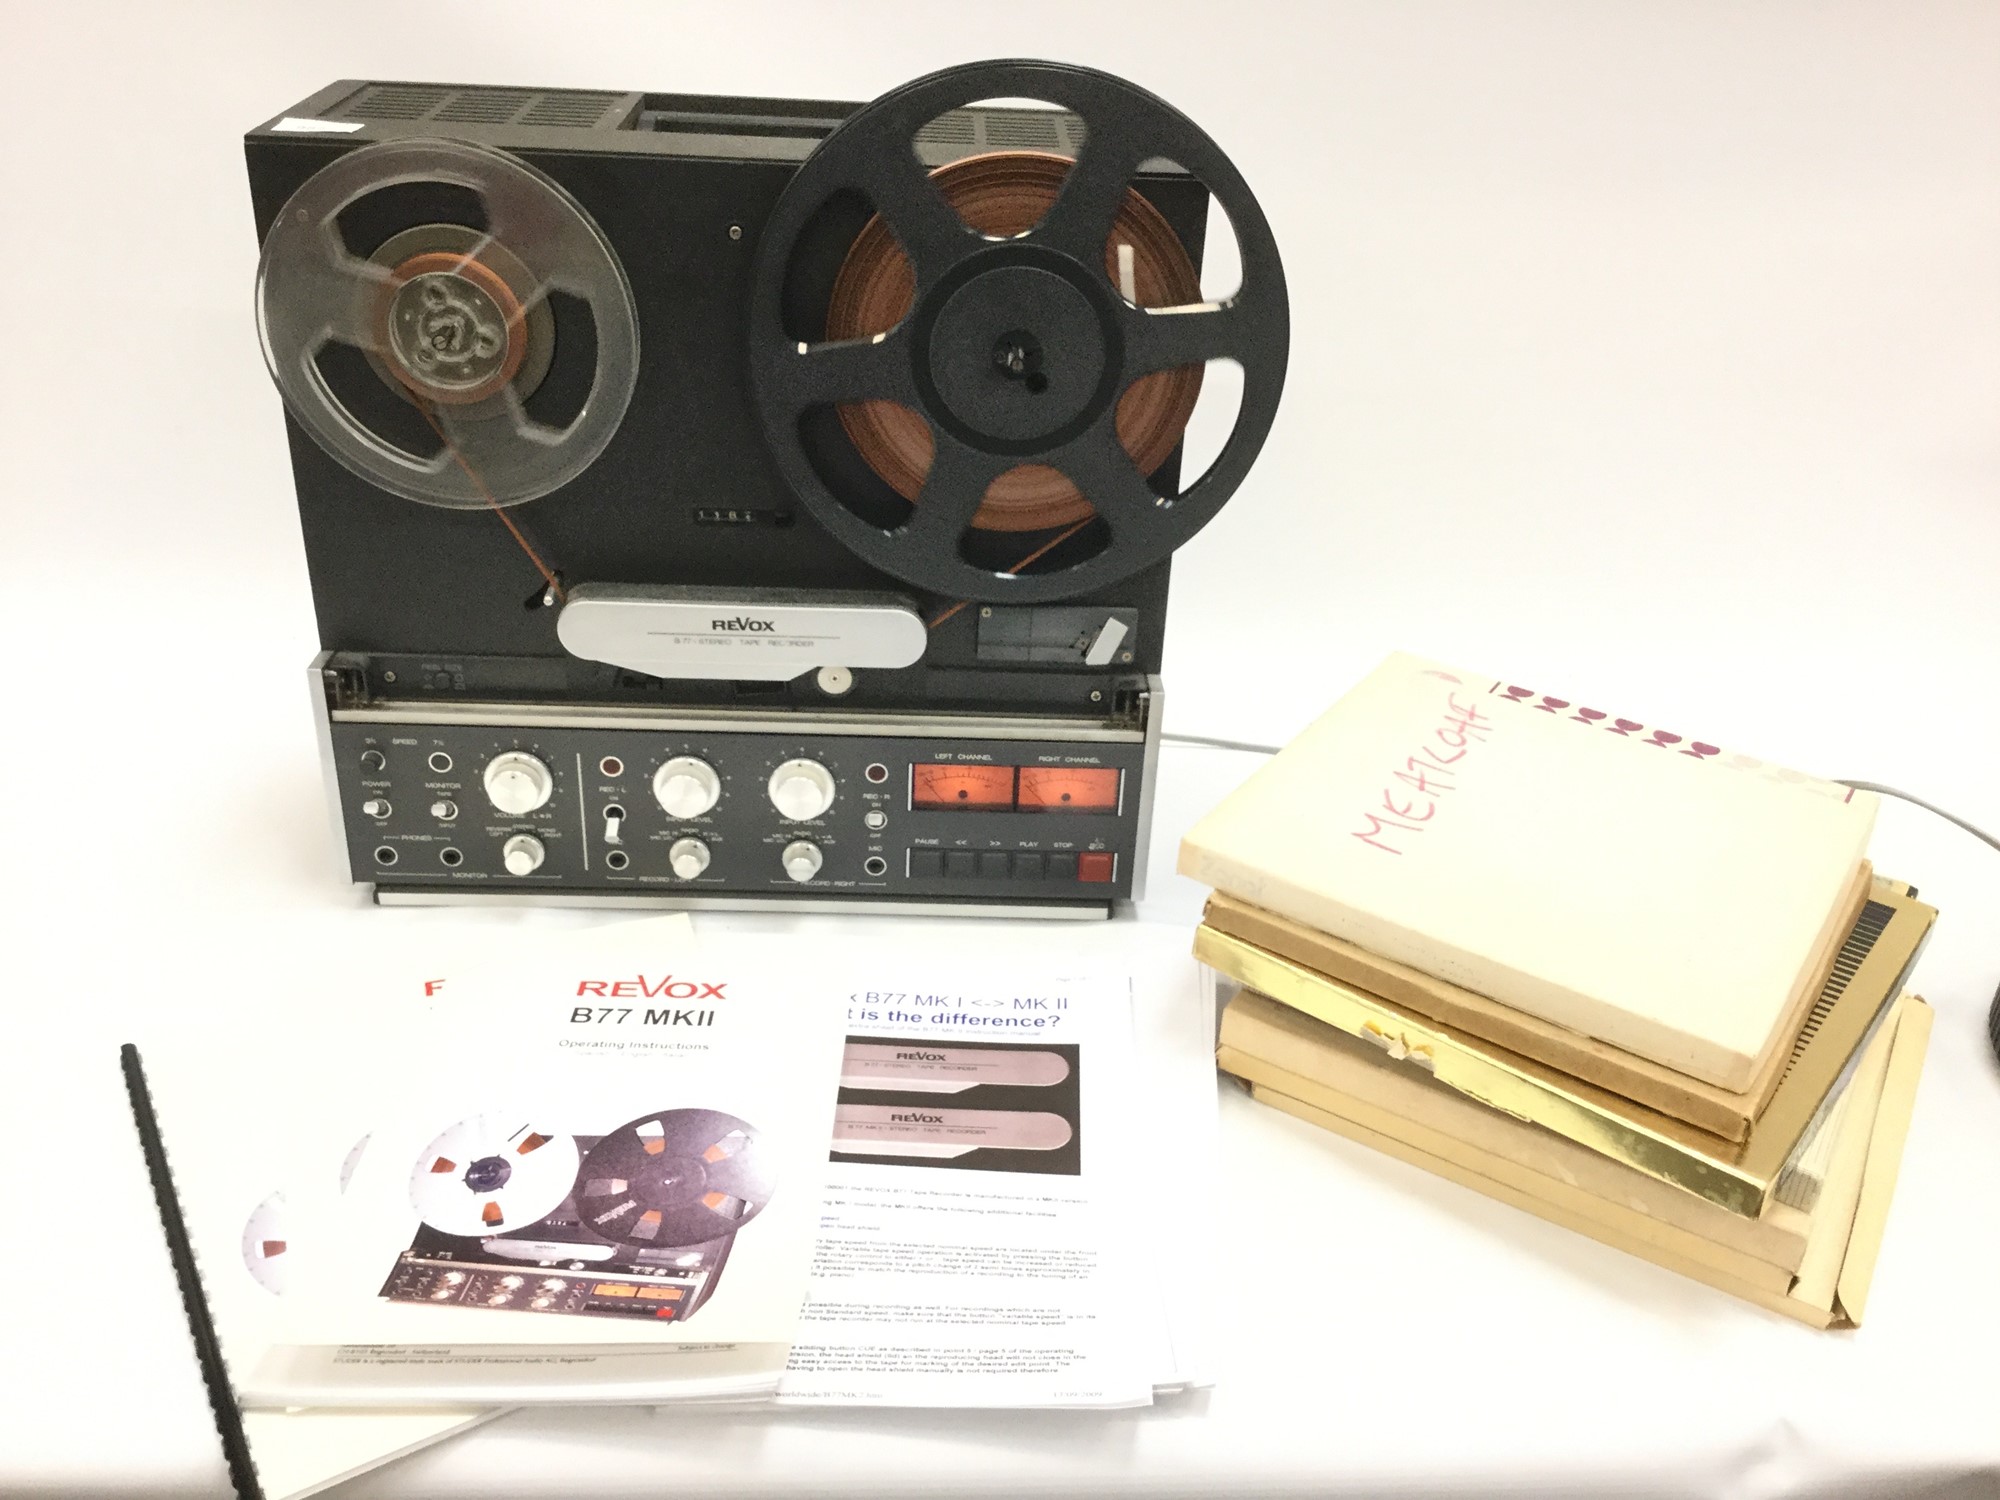 Lot 982 - ReVox B77 MKII reel to reel tape recorder